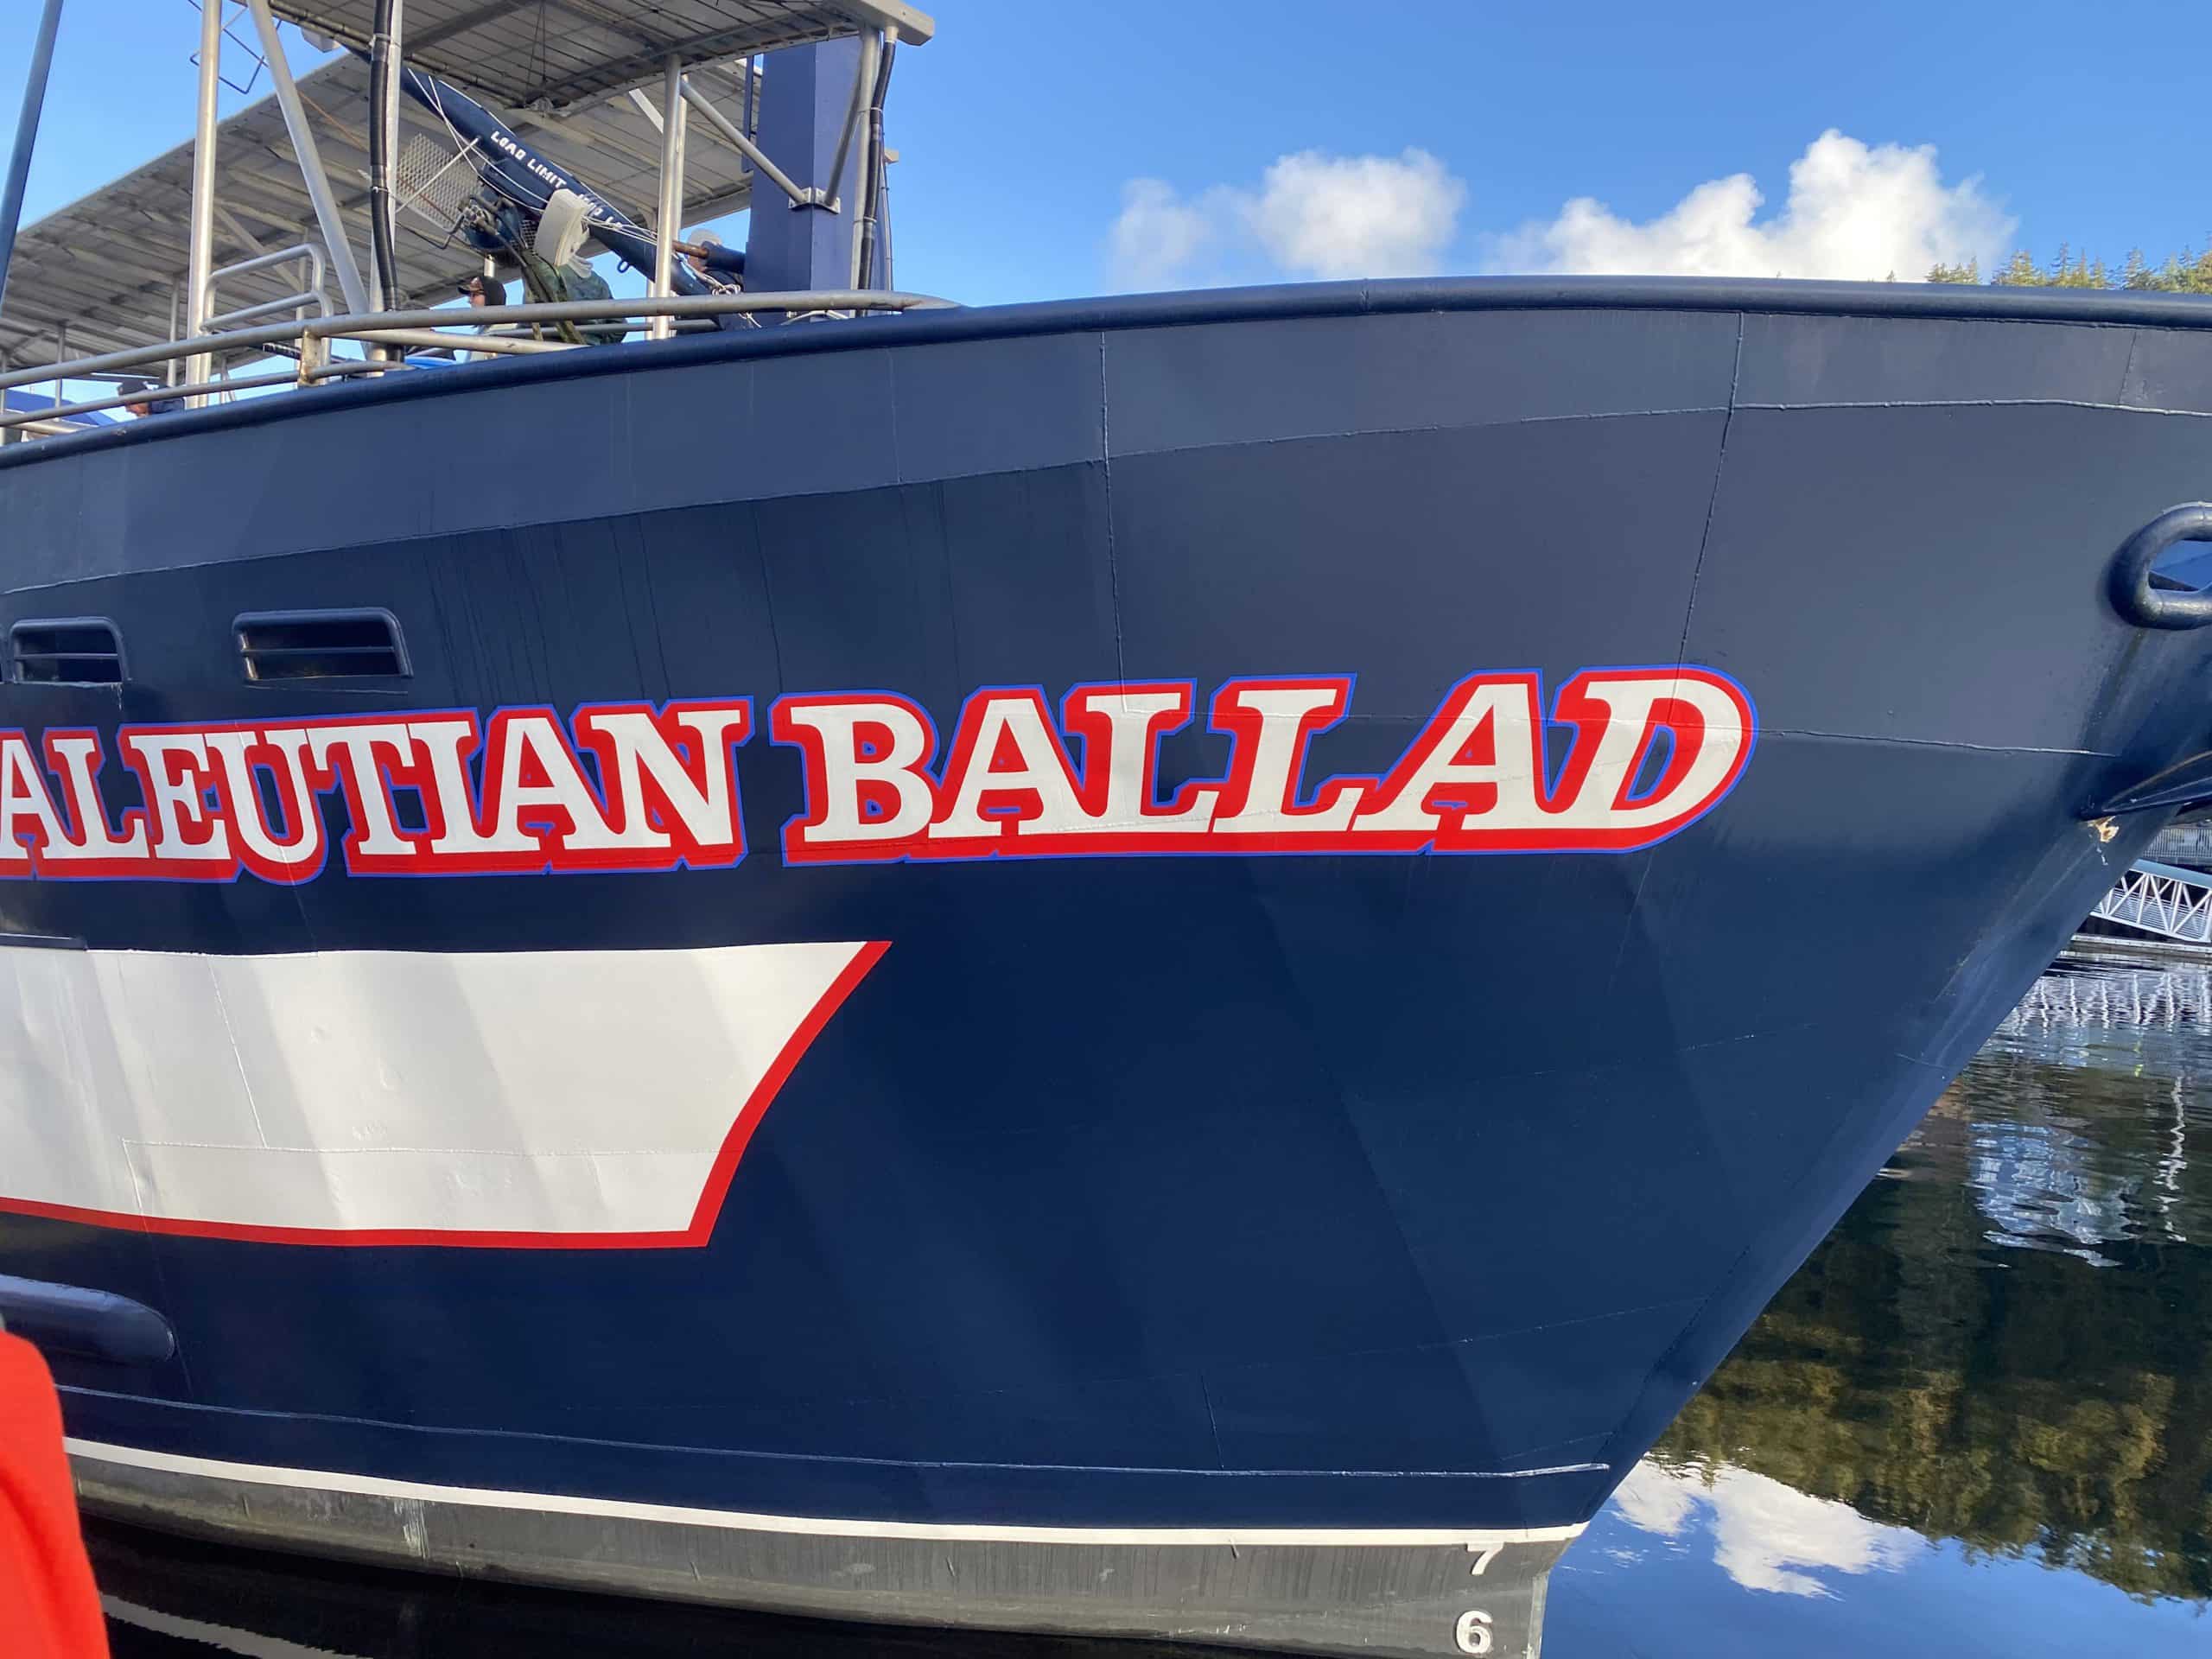 Aleutian Ballad Ship Front